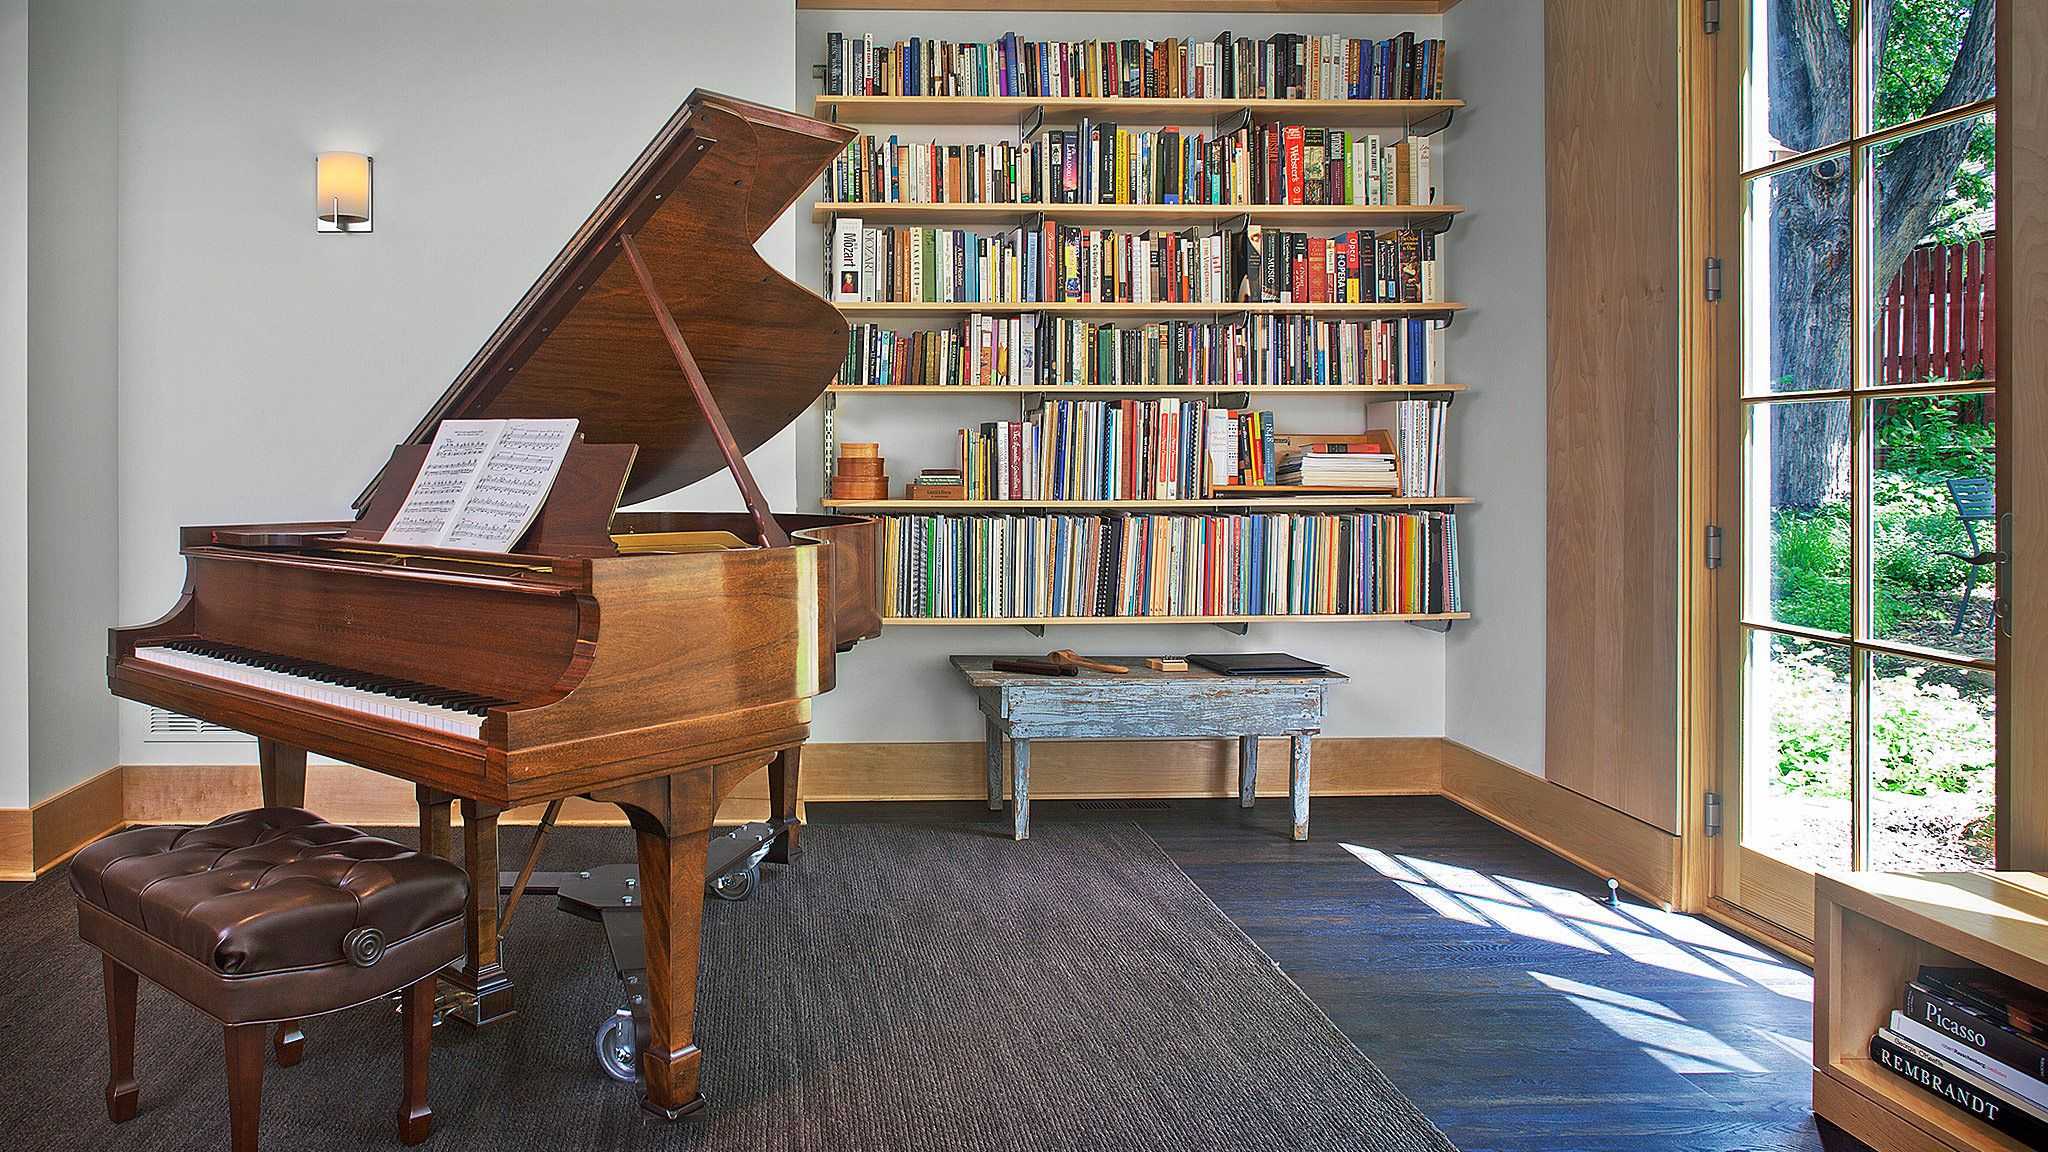 Библиотеки музыка 5. Интерьер комнаты с пианино. Комната с пианино. Музыкальная библиотека. Пианино в библиотеке.